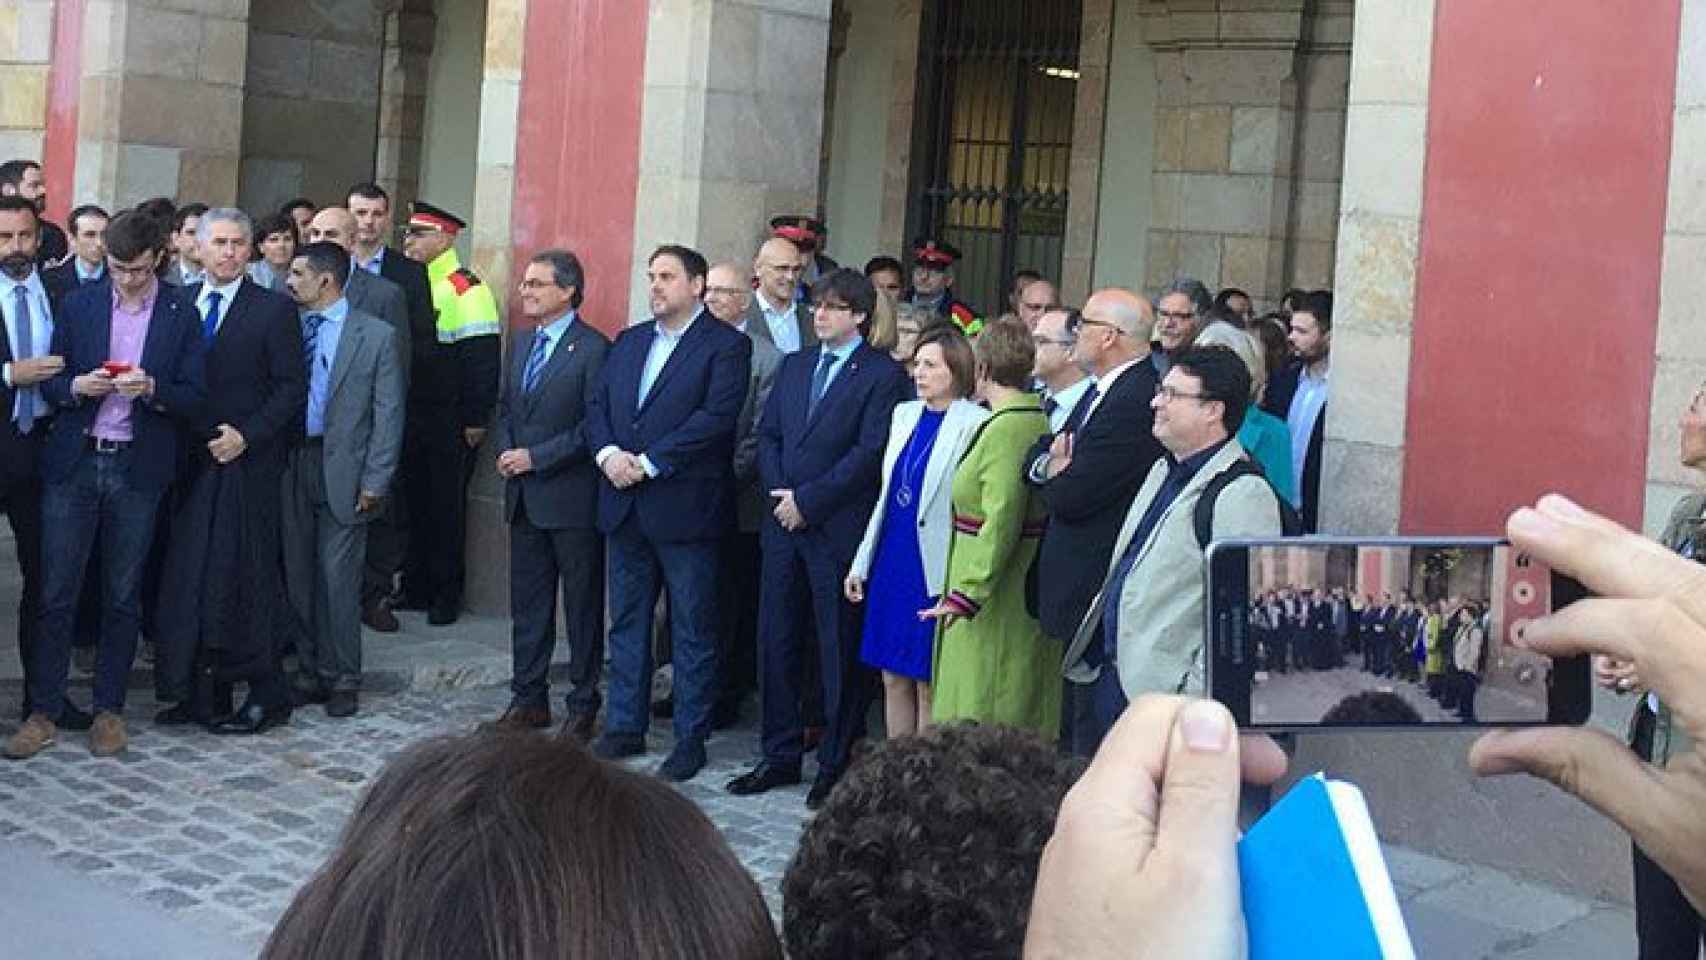 Artur Mas, Oriol Junqueras, Carles Puigdemont, Raül Romeva y Gerardo Pissarello han acudido a arropar a Carme Forcadell a la sede del Parlamento catalán / CG